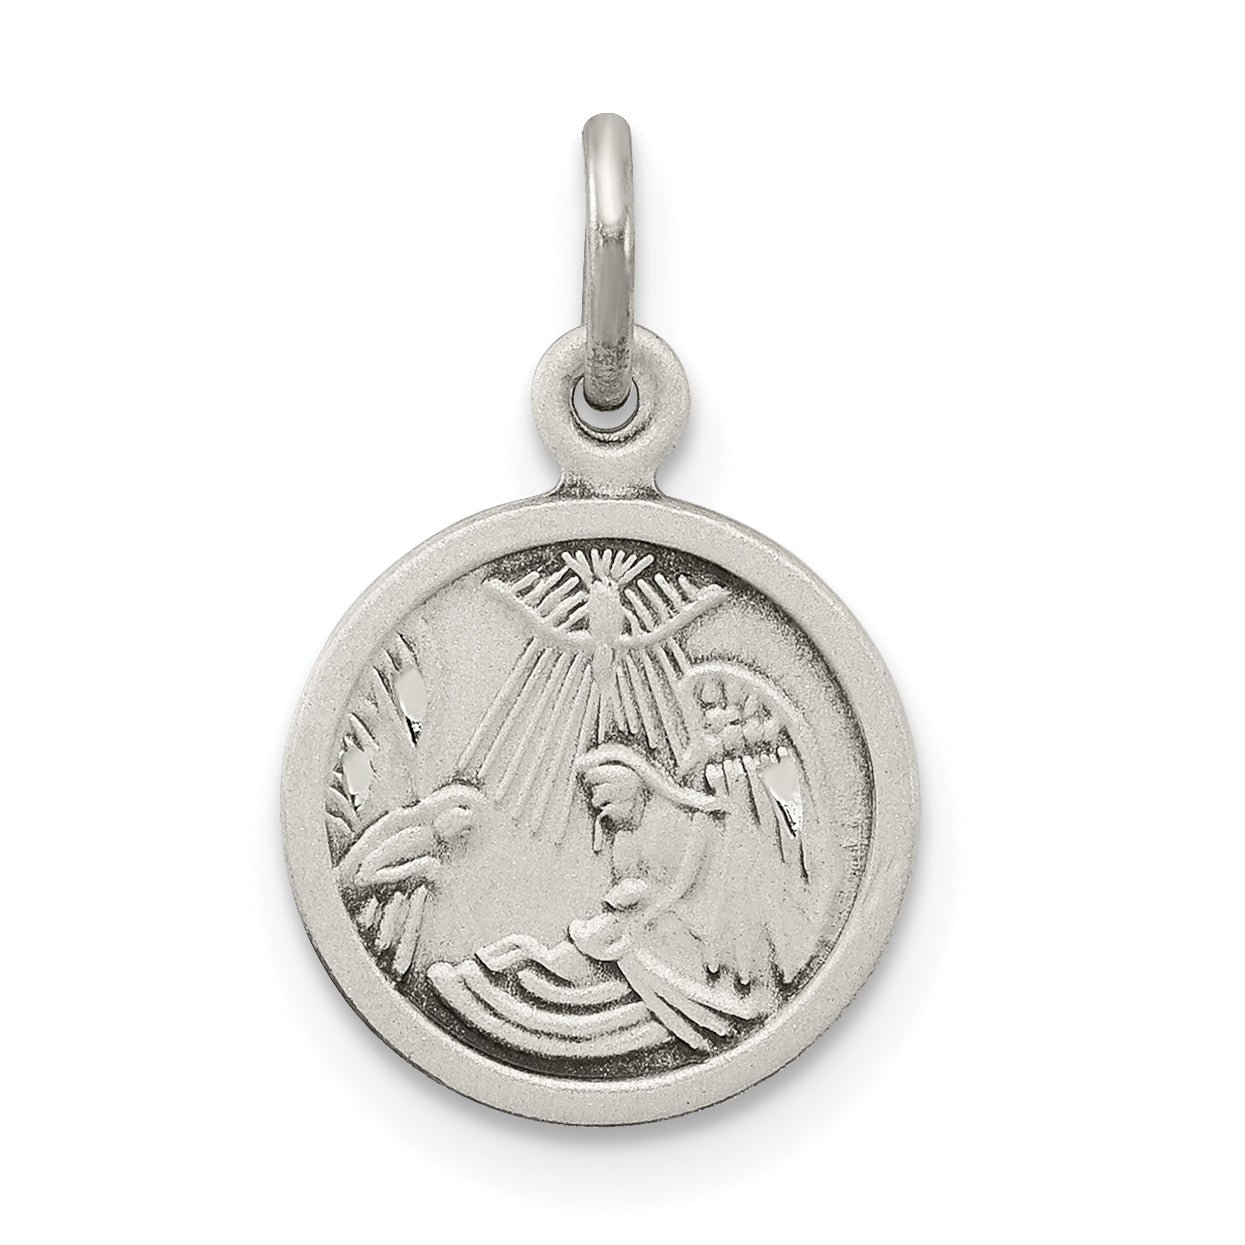 Sterling Silver Antiqued Baptism Medal